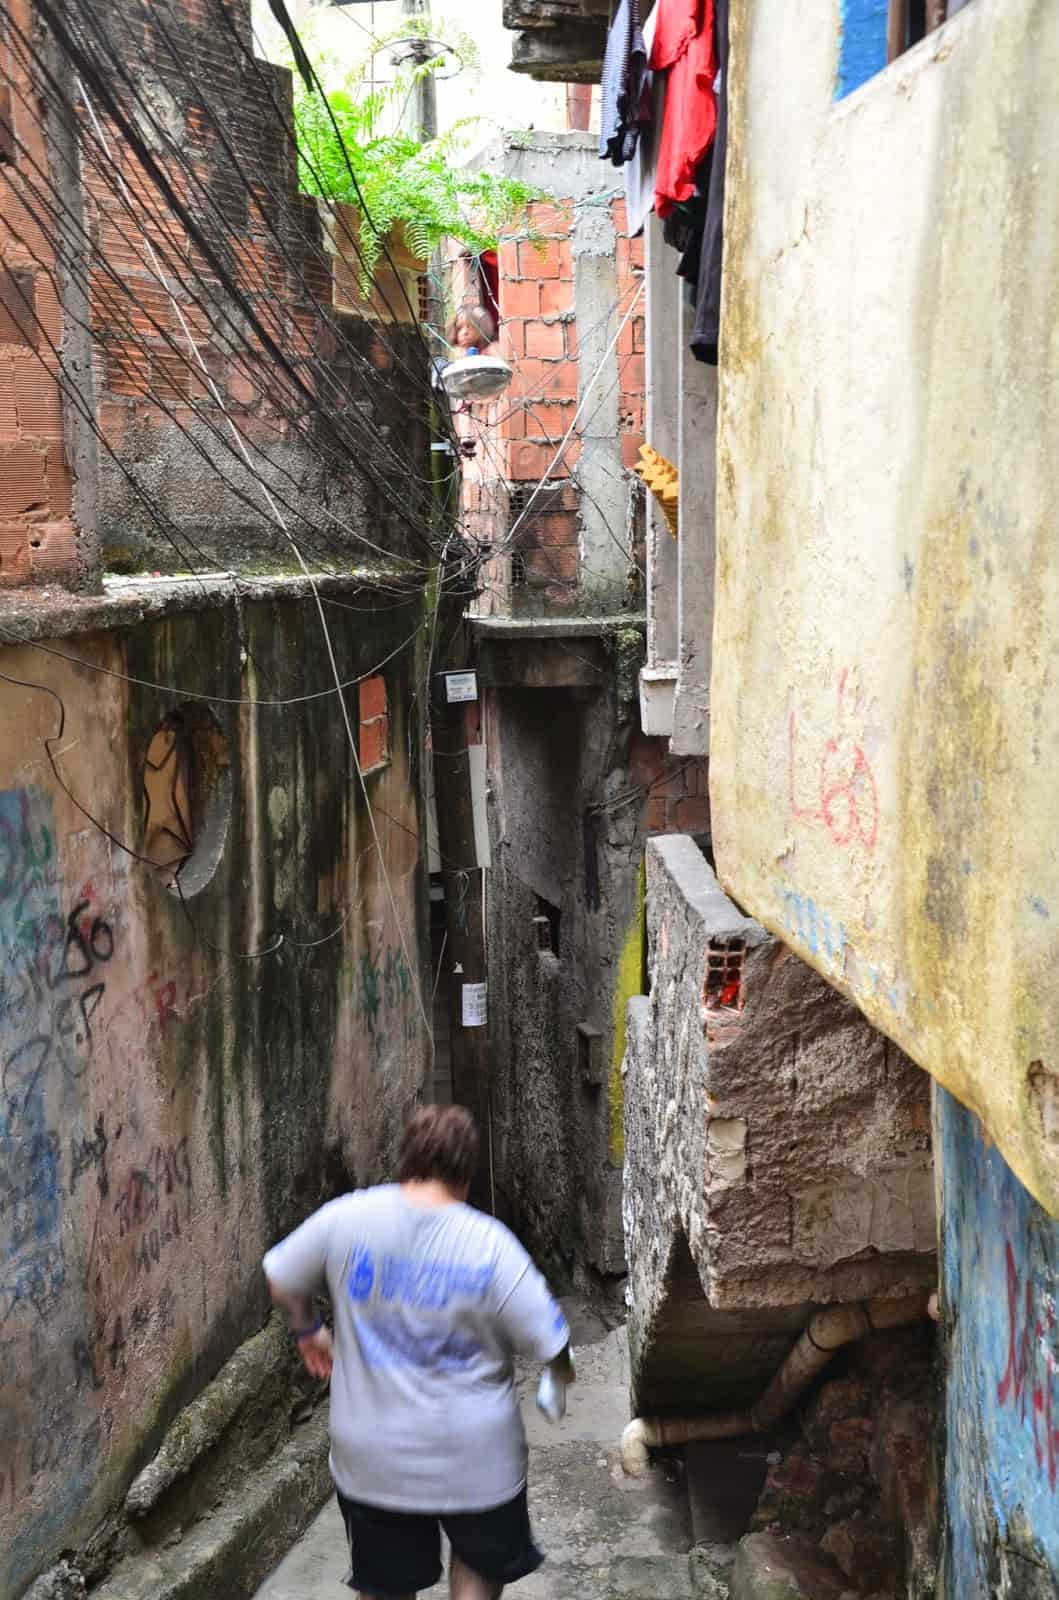 Alley at Rocinha favela, Rio de Janeiro, Brazil